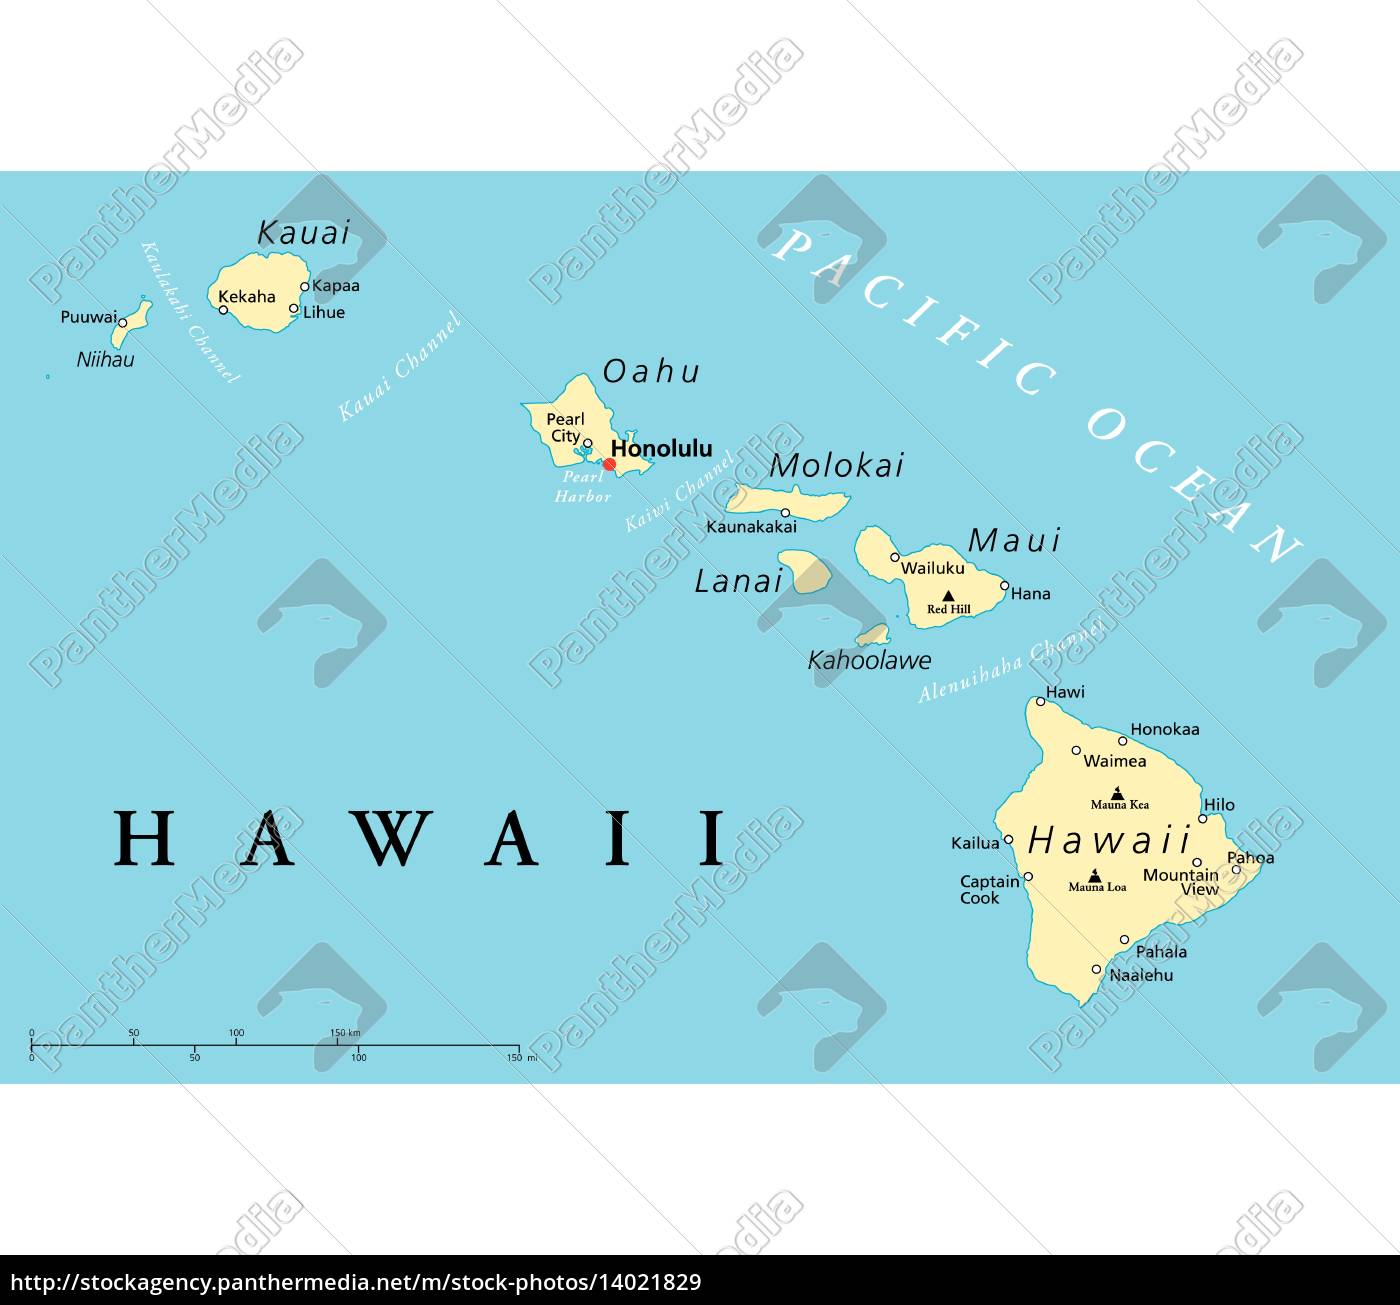 Kort Over Hawaii øErne hawaii øerne politisk kort   Stockphoto   #14021829   PantherMedia  Kort Over Hawaii øErne